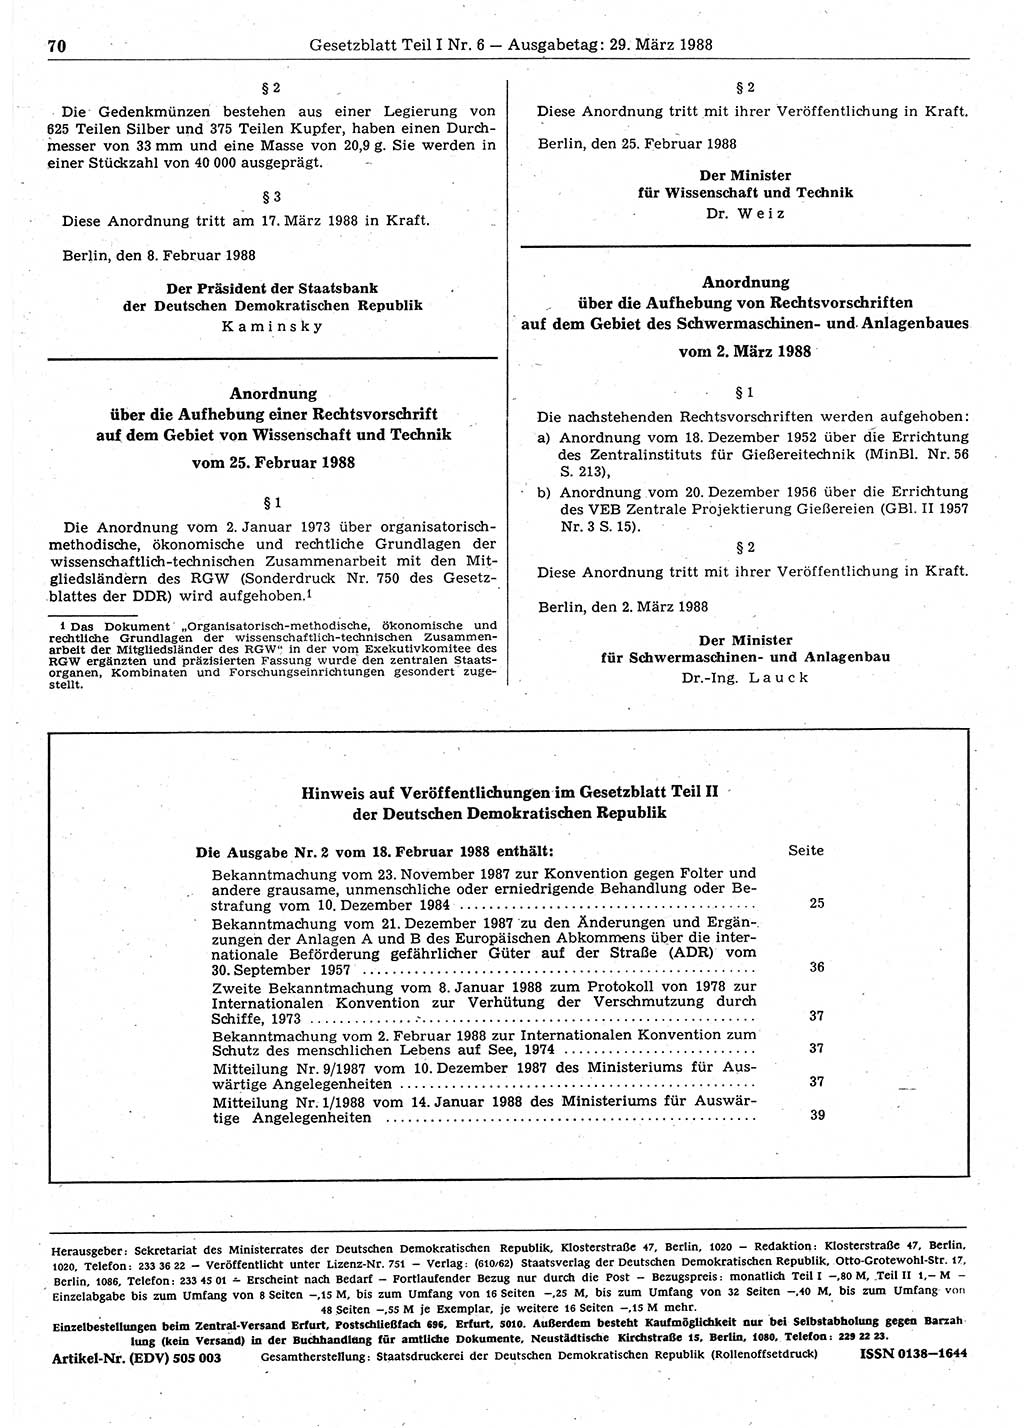 Gesetzblatt (GBl.) der Deutschen Demokratischen Republik (DDR) Teil Ⅰ 1988, Seite 70 (GBl. DDR Ⅰ 1988, S. 70)